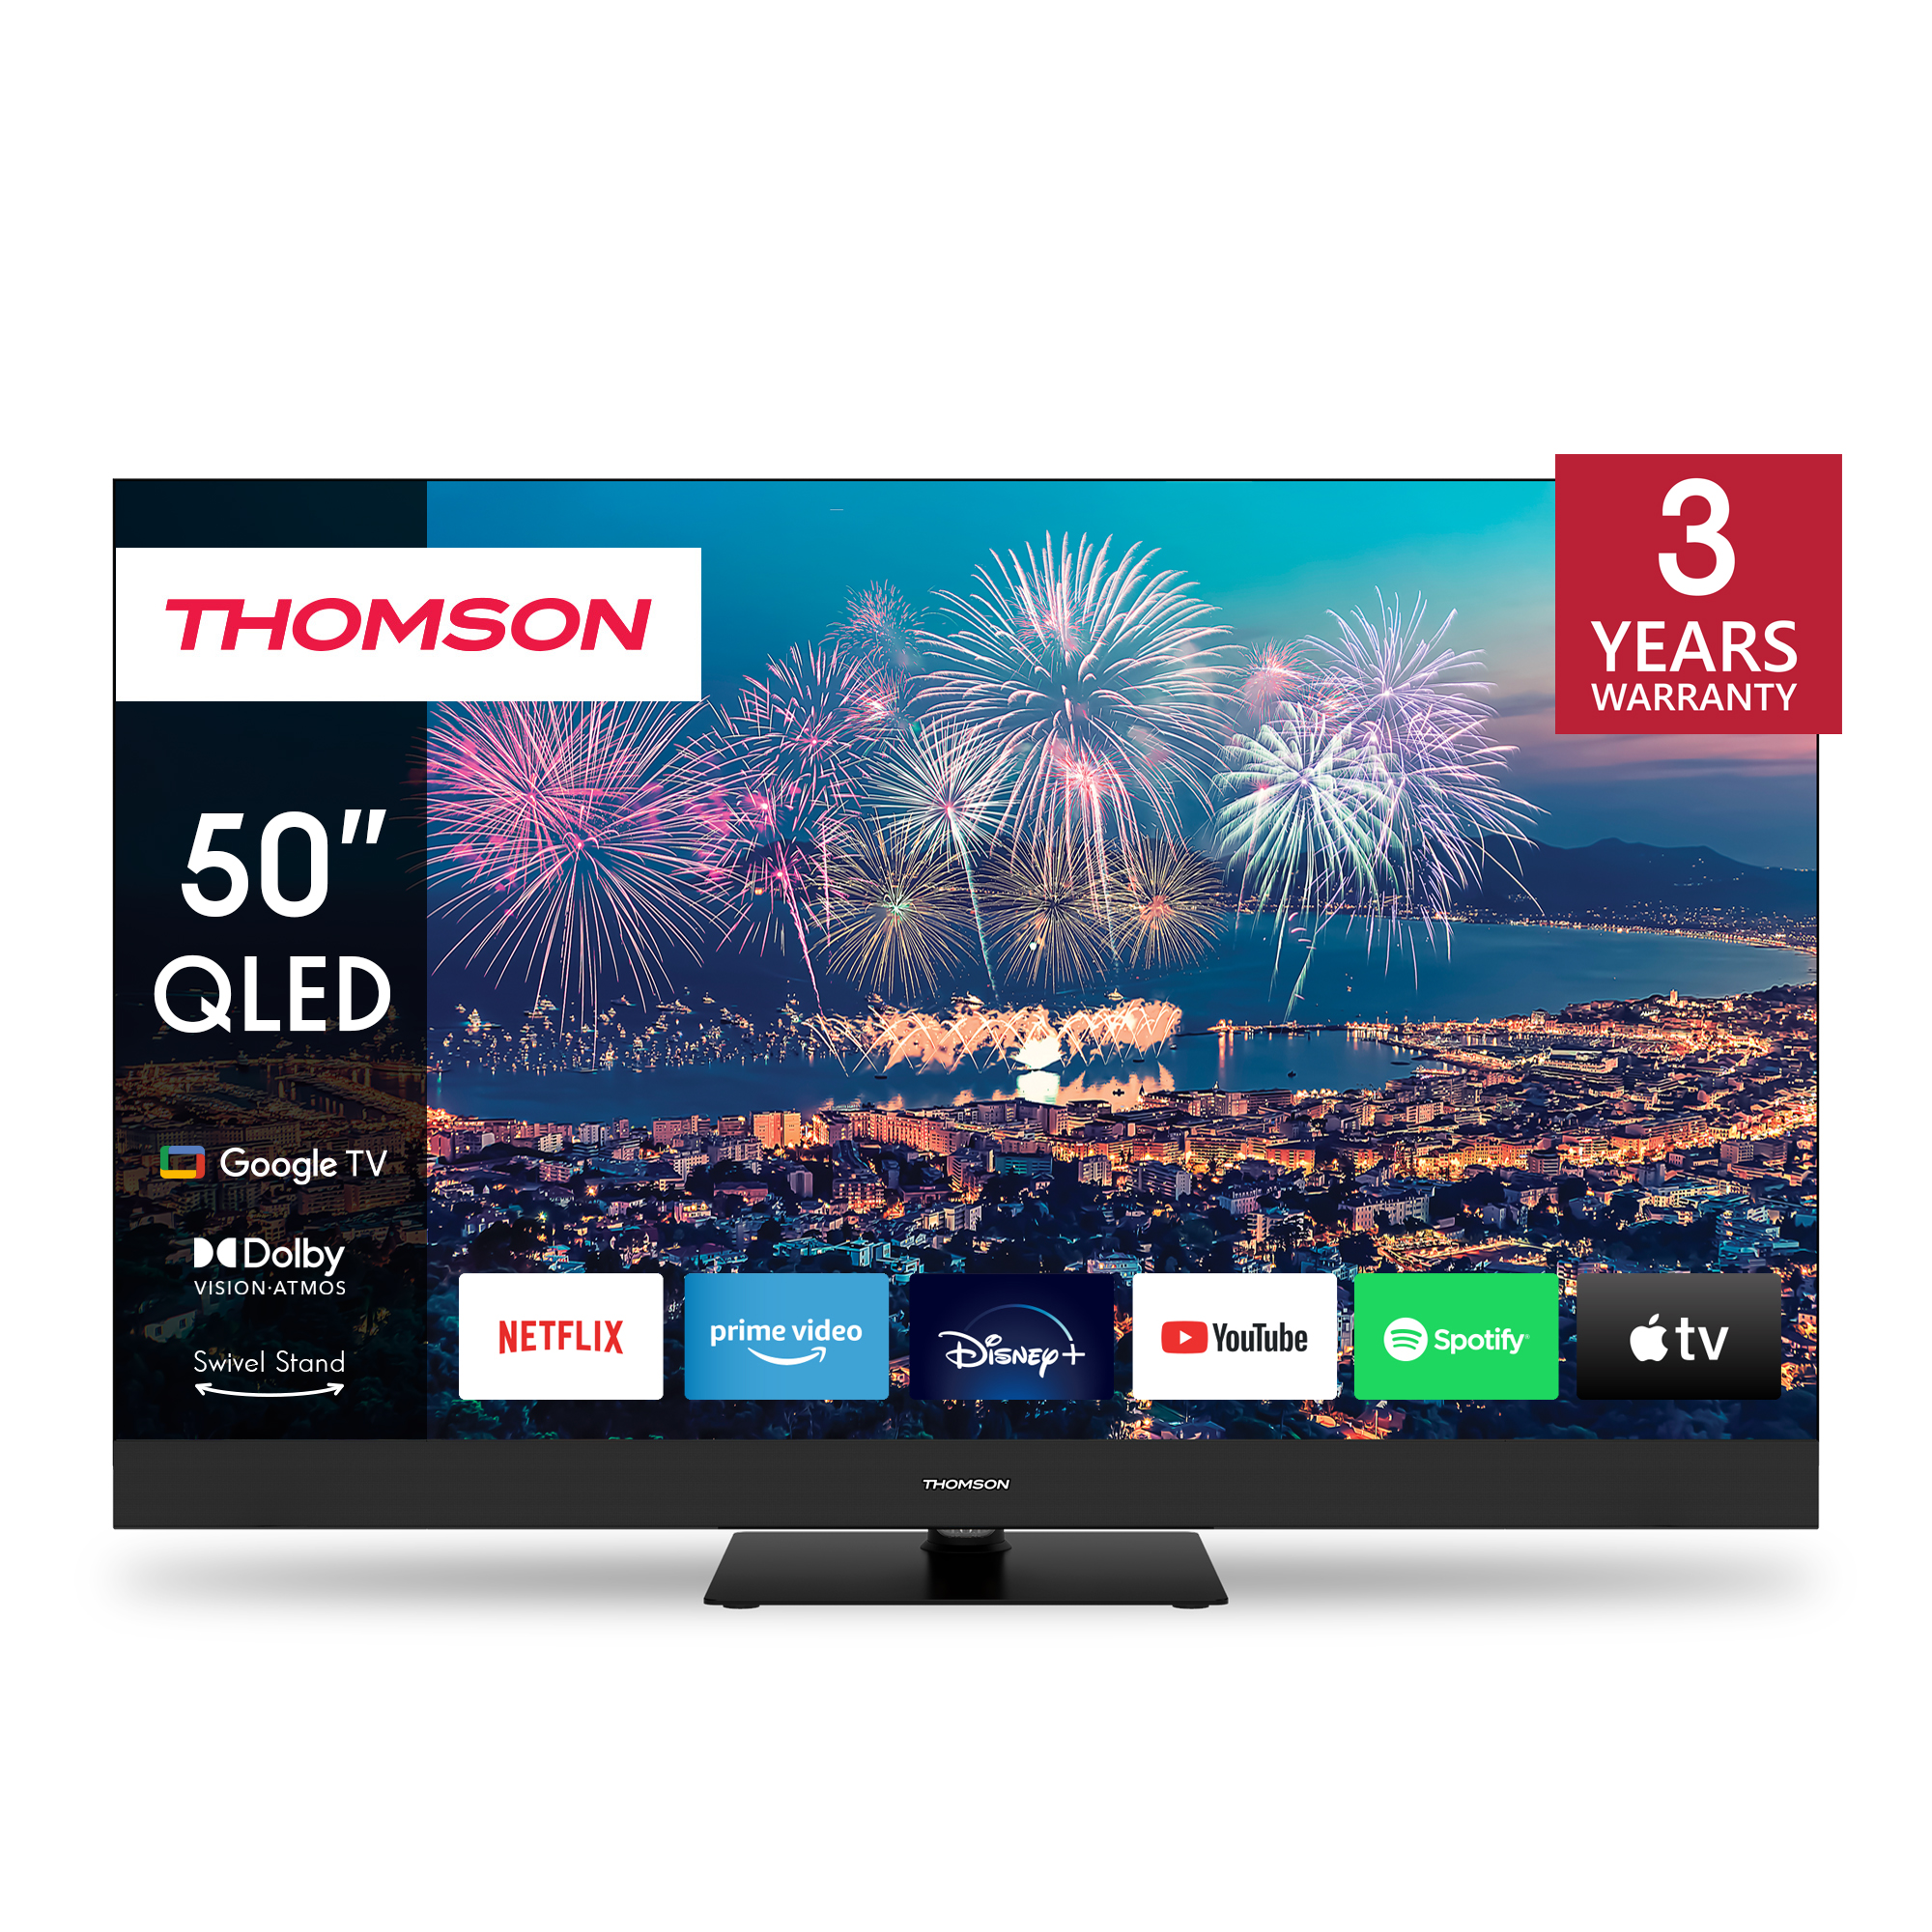 Thomson 50QG6C14 QLED Plus Google TV